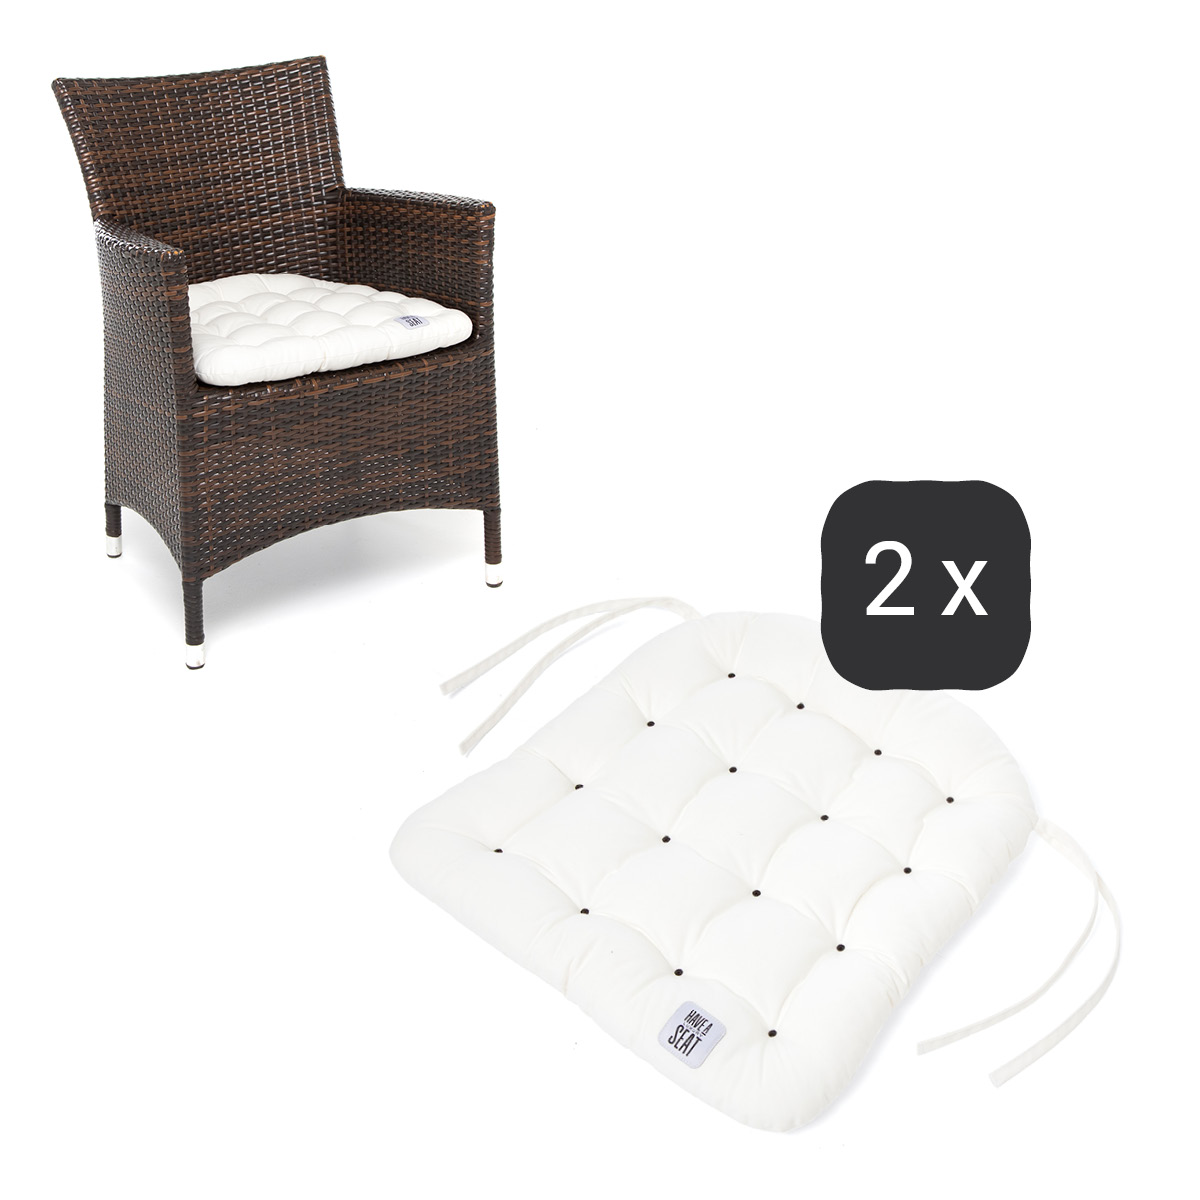 Sitzkissen für Rattanstühle 48x46 cm | Weiß | 2er Set | Premium-Sitzkomfort | Indoor / Outdoor | waschbar bis 95°C | HAVE A SEAT Living